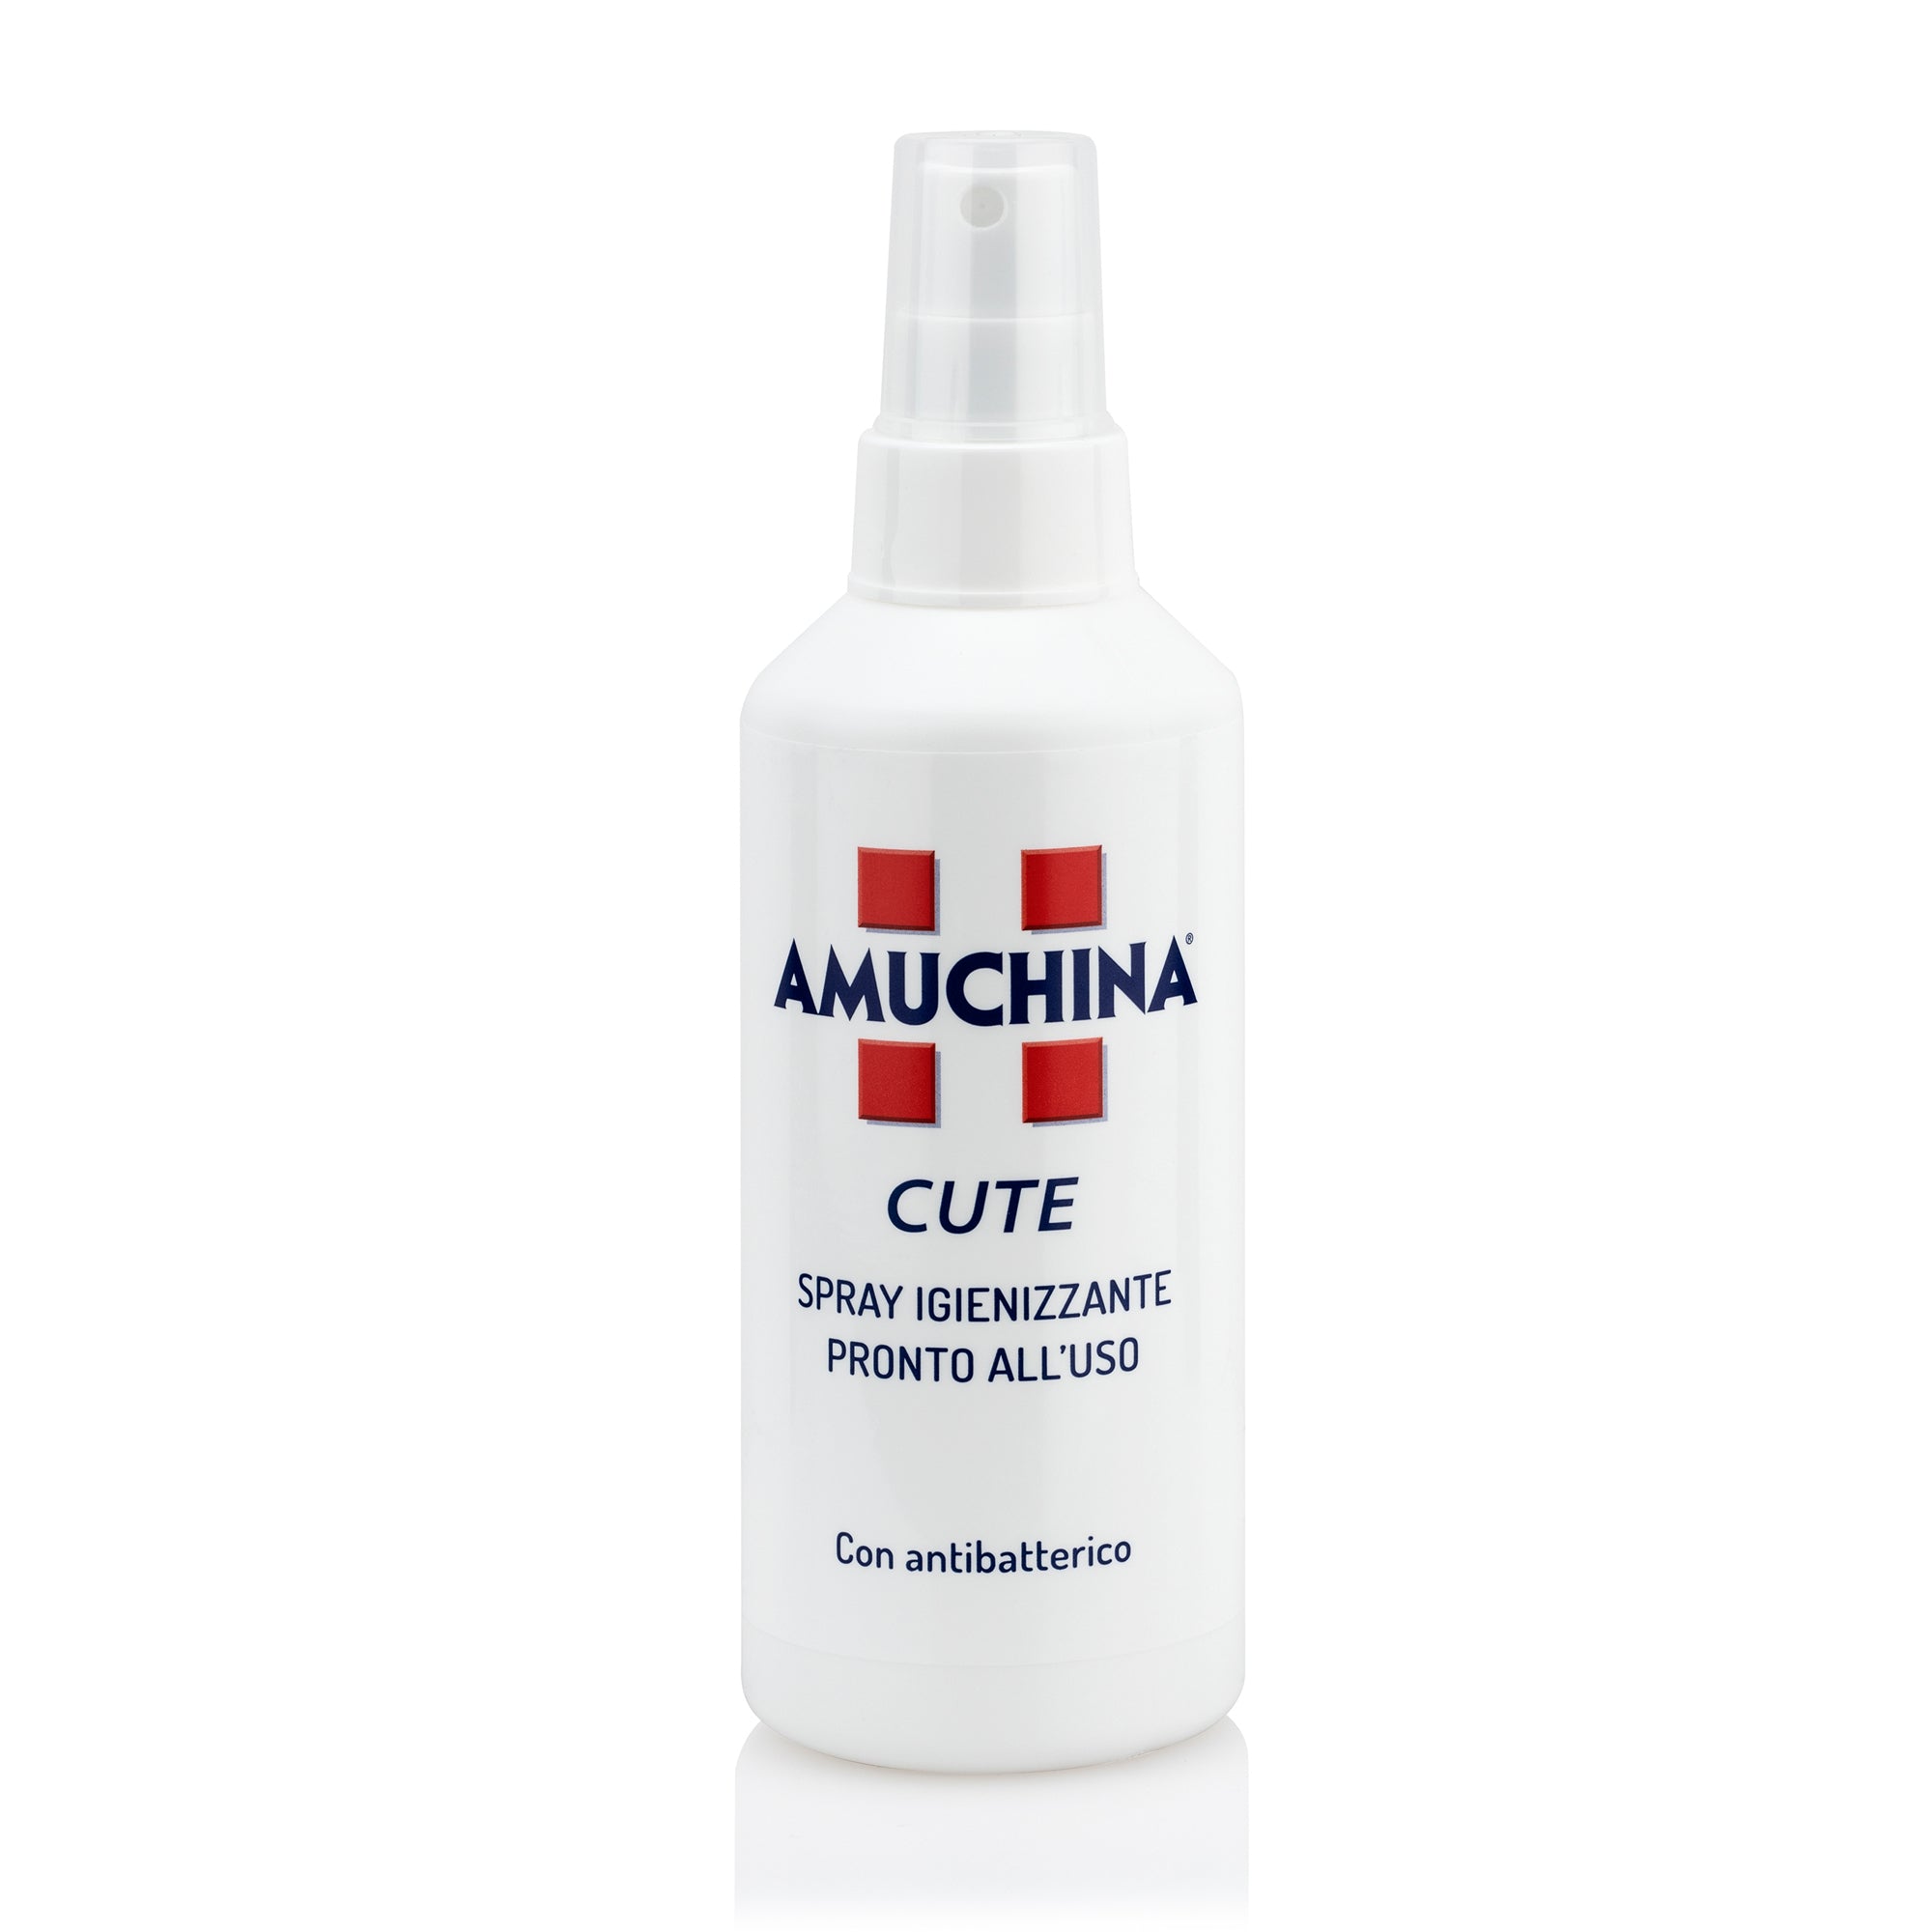 amuchina-professional-spray-igienizzante-cute-amuchina-200ml